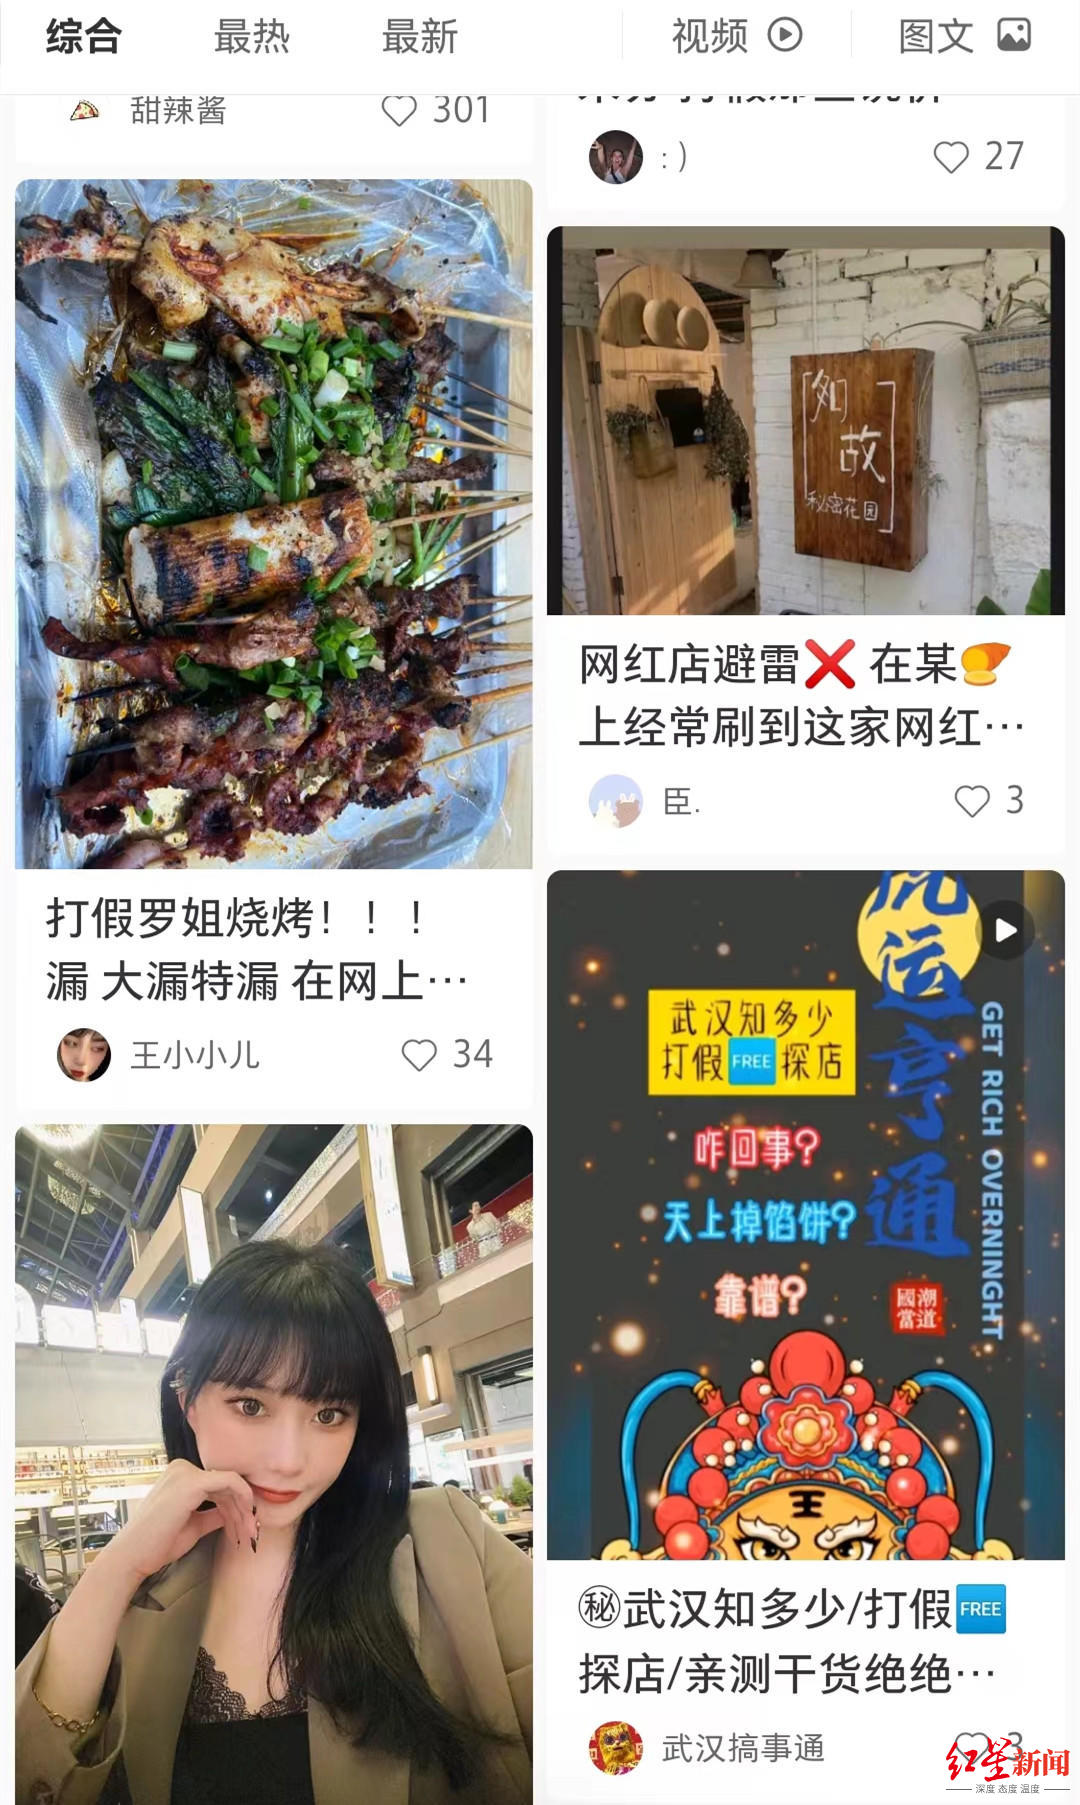 上海探店美食视频_美食探店工作怎么样_贵阳美食探店王瓢瓢